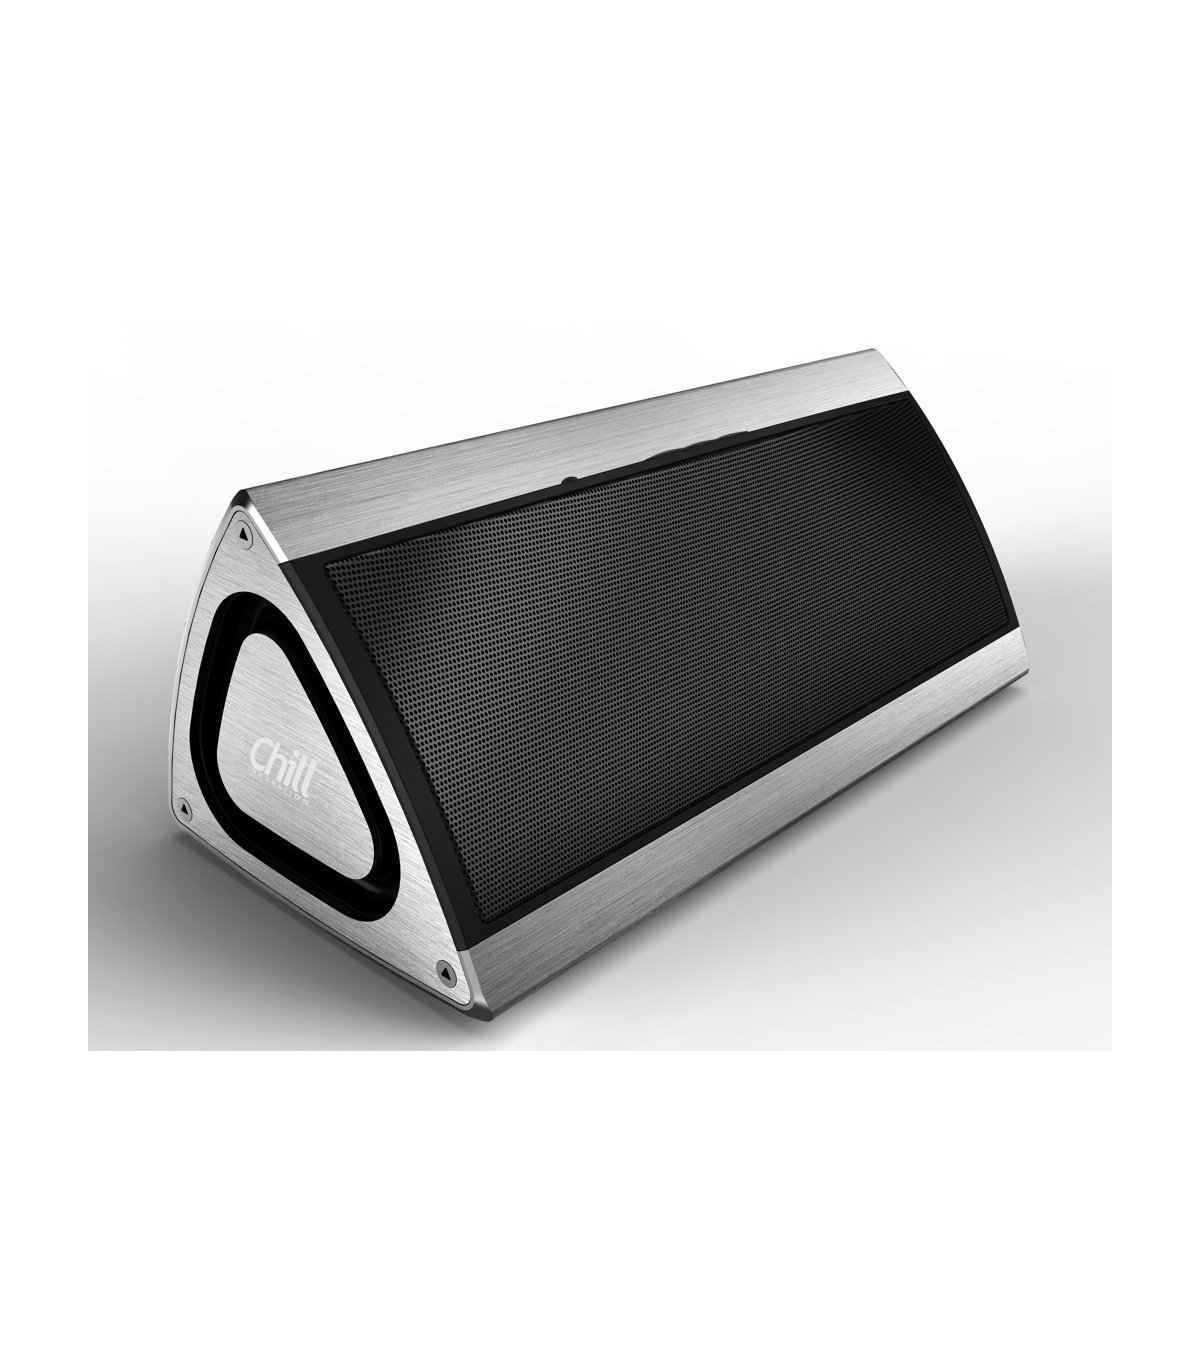 Chill Fidelity Wireless Bluetooth 4.0 Alu 3D Stereo Speaker